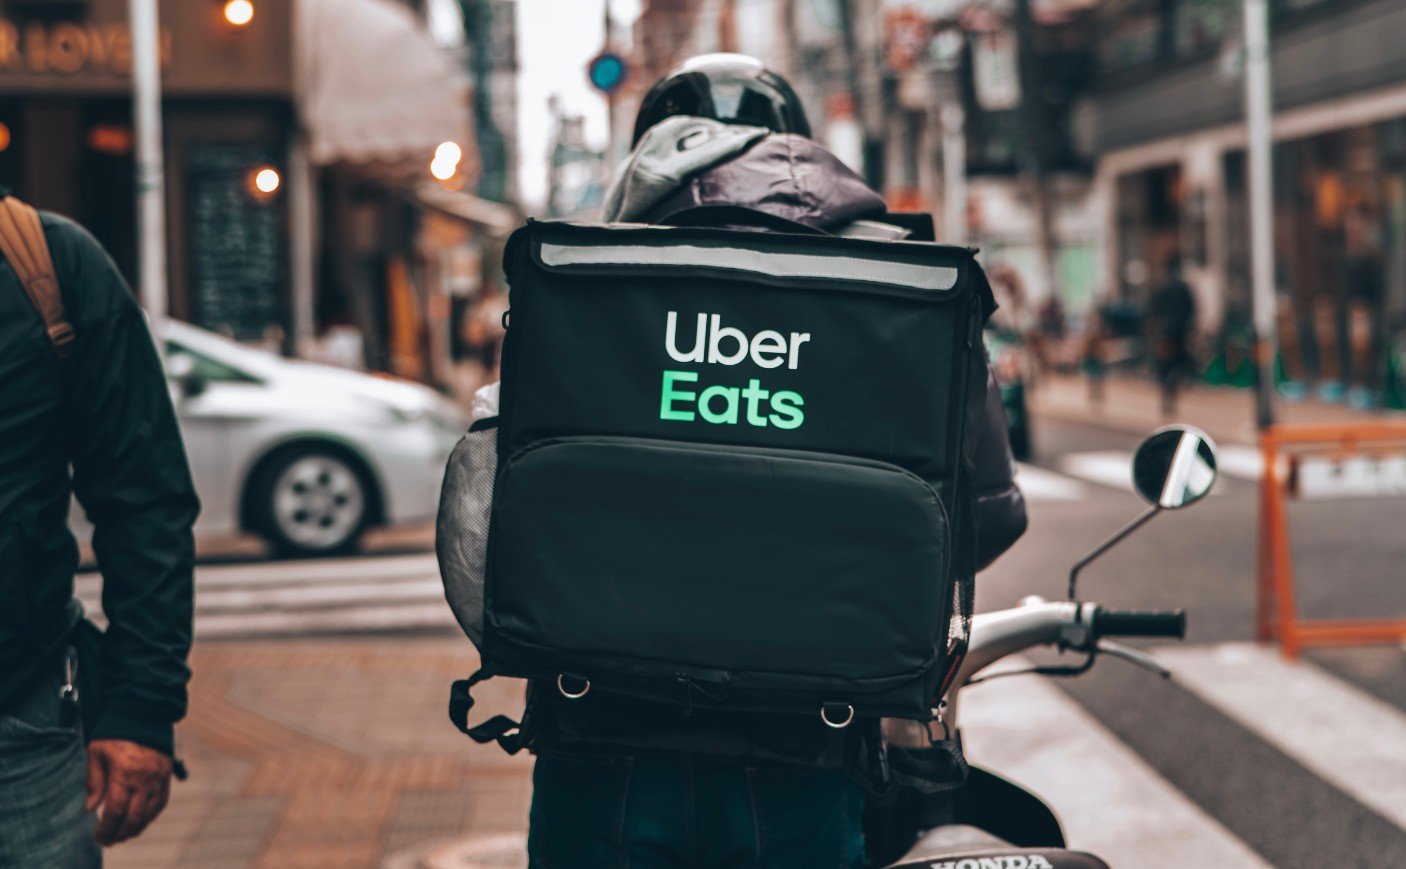 Homem de costas, em uma motocicleta, carregando uma mochila de delivery com o logotipo da Uber Eats